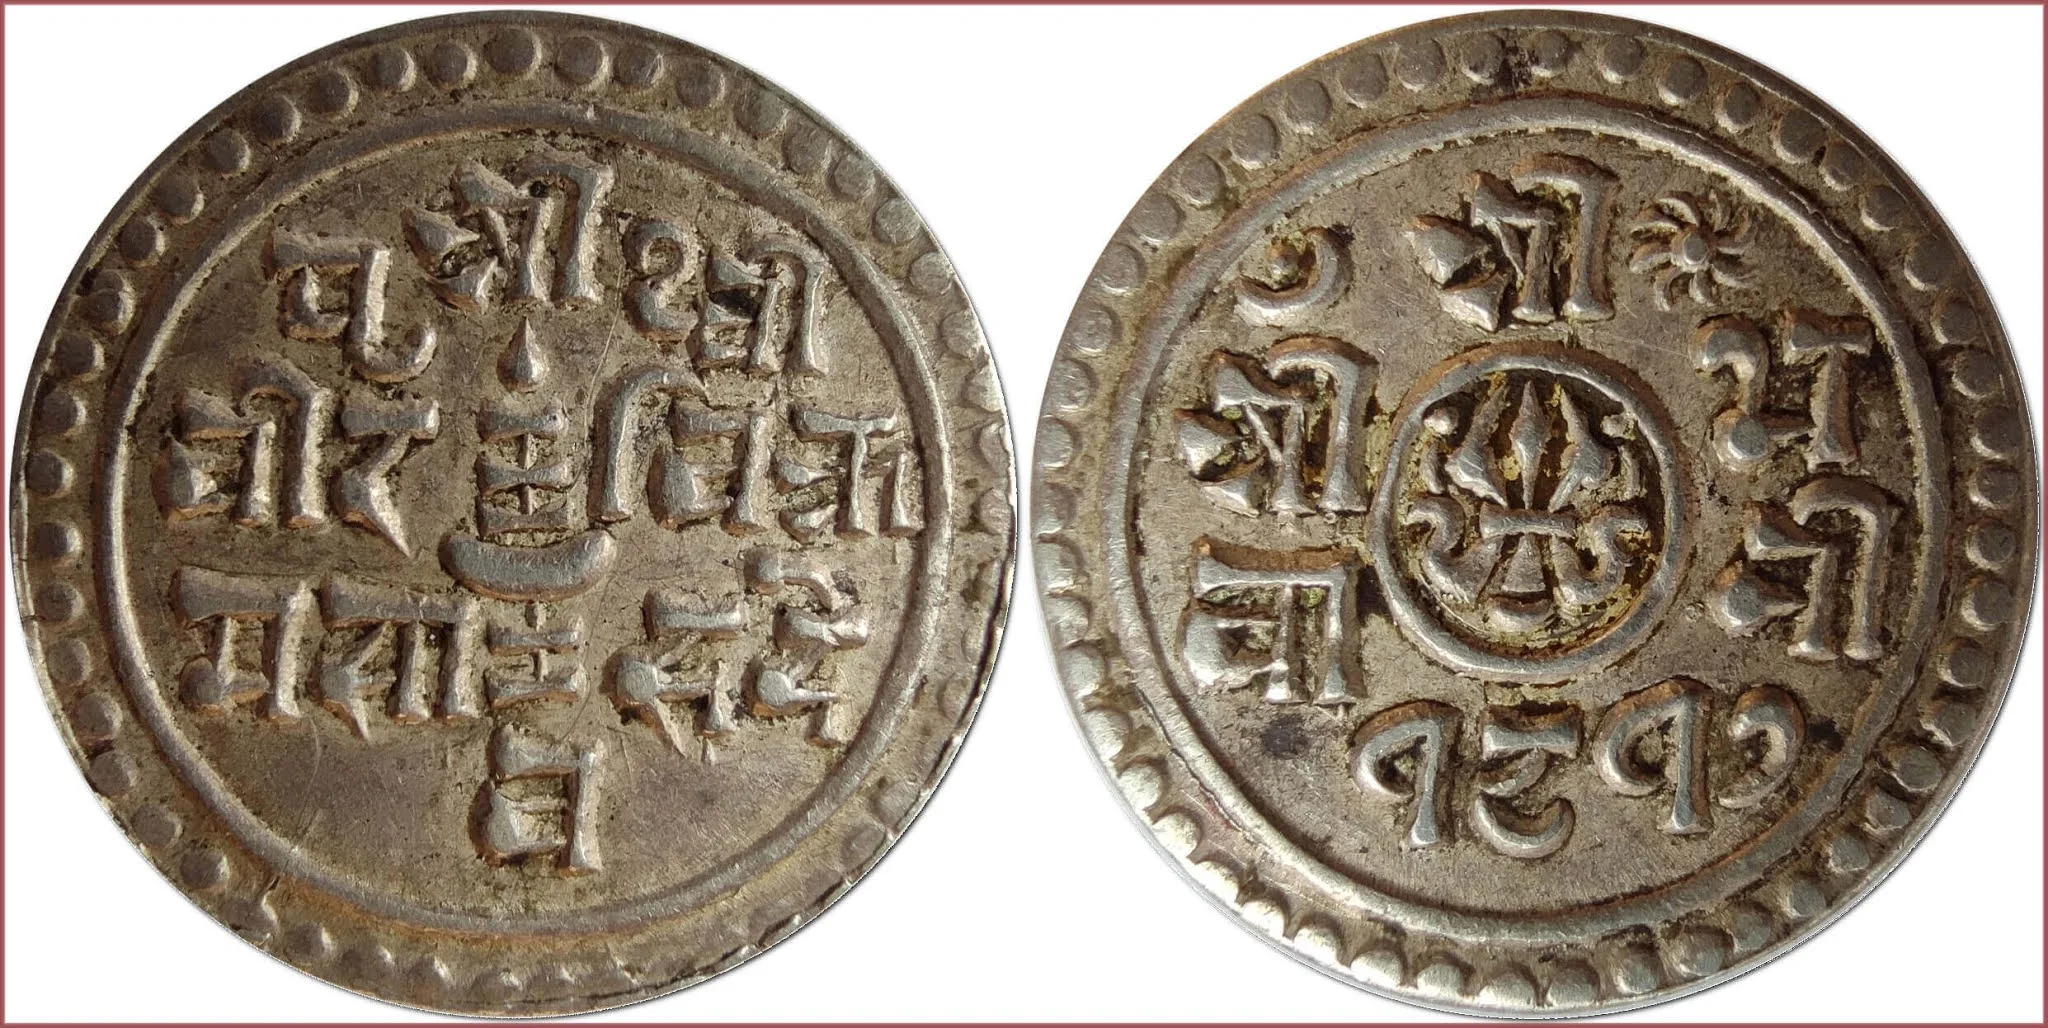 1/4 mohar /mohur/, 1895: Kingdom of Nepal